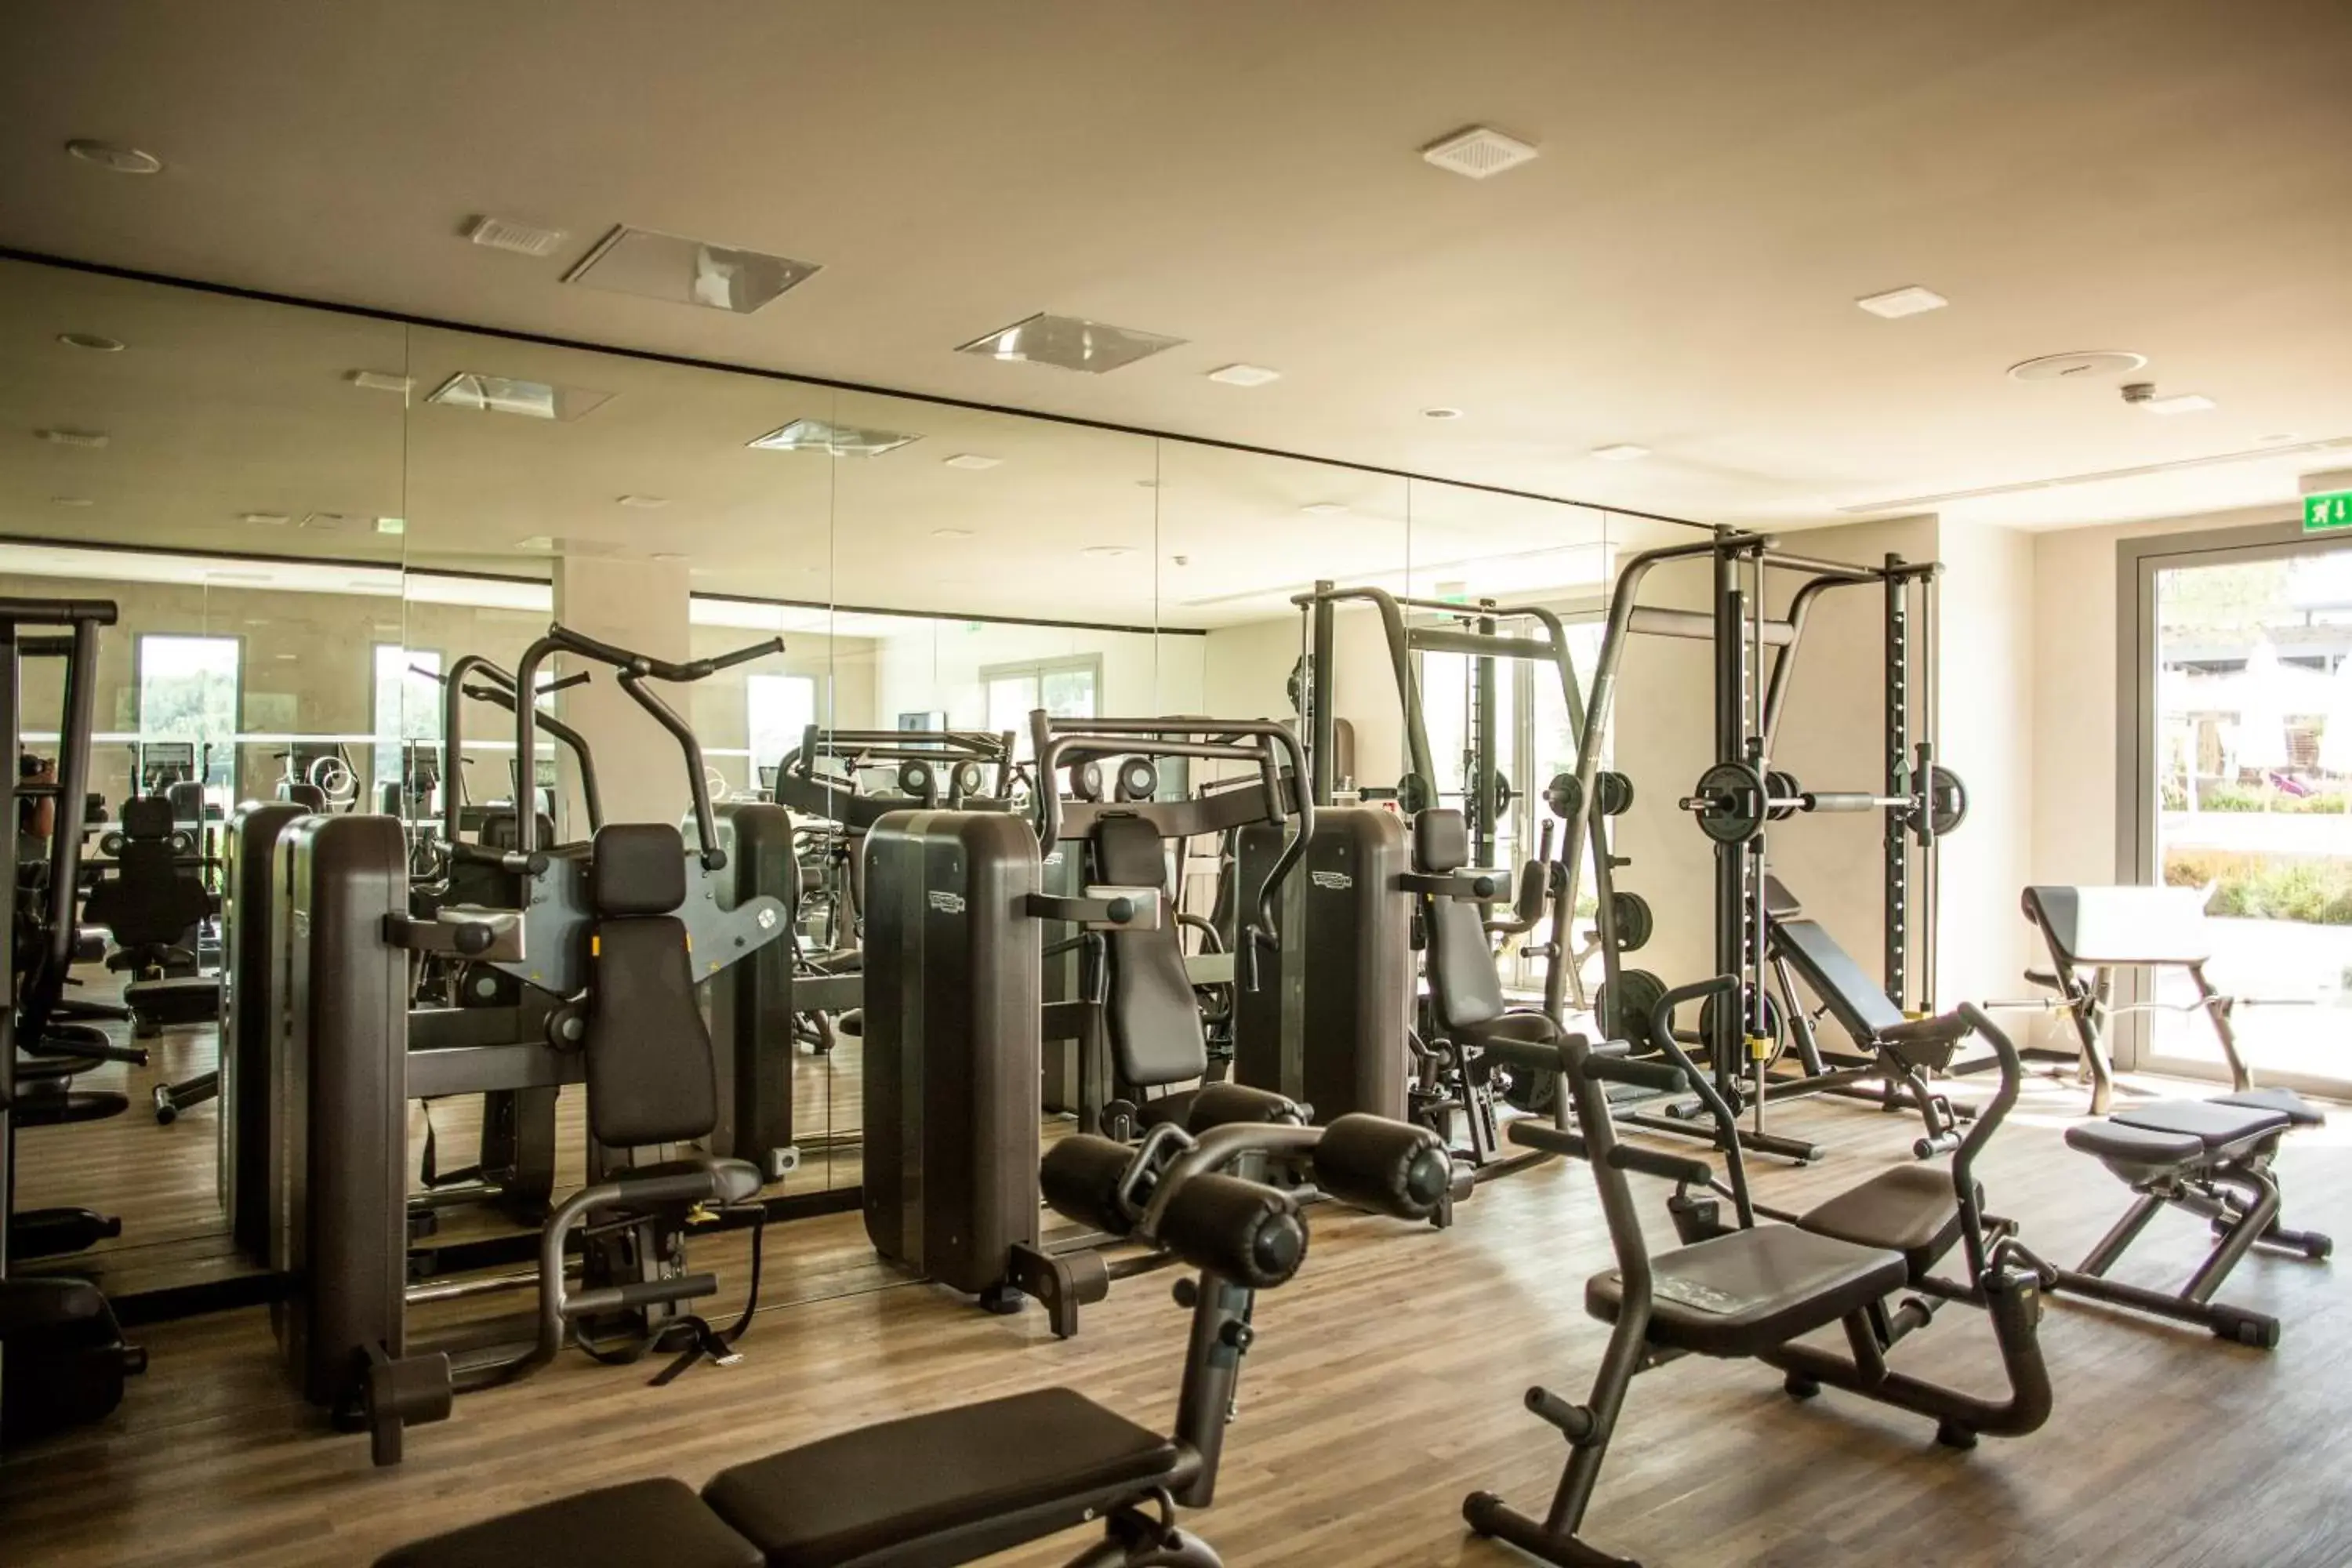 Fitness centre/facilities, Fitness Center/Facilities in Domaine de Verchant & Spa - Relais & Châteaux